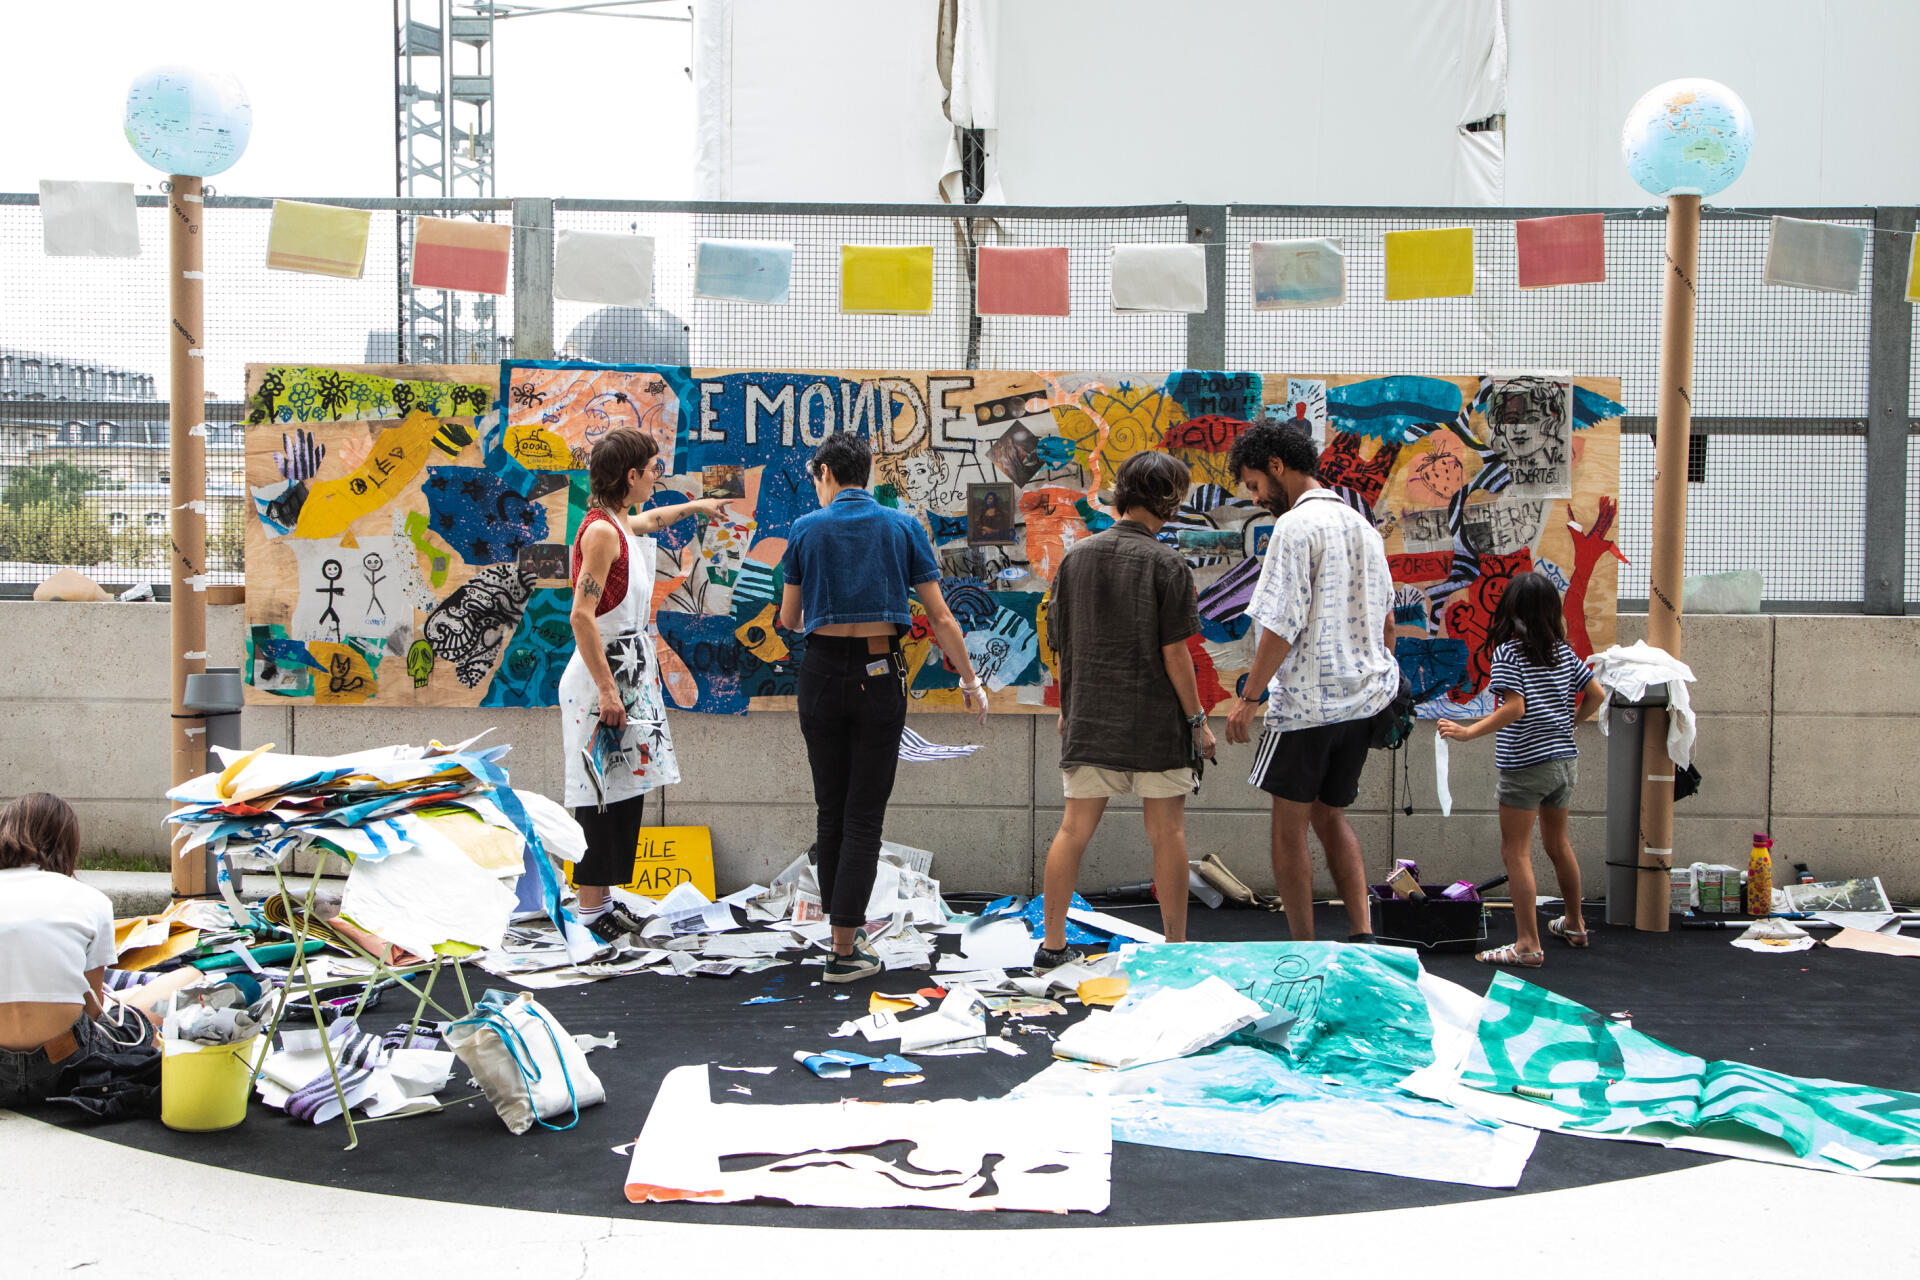 Atelier de création d’une fresque participative à partir de chutes du journal, avec l’artiste Cecilio lors du festival du Monde, à Paris, le 16 septembre 2023.